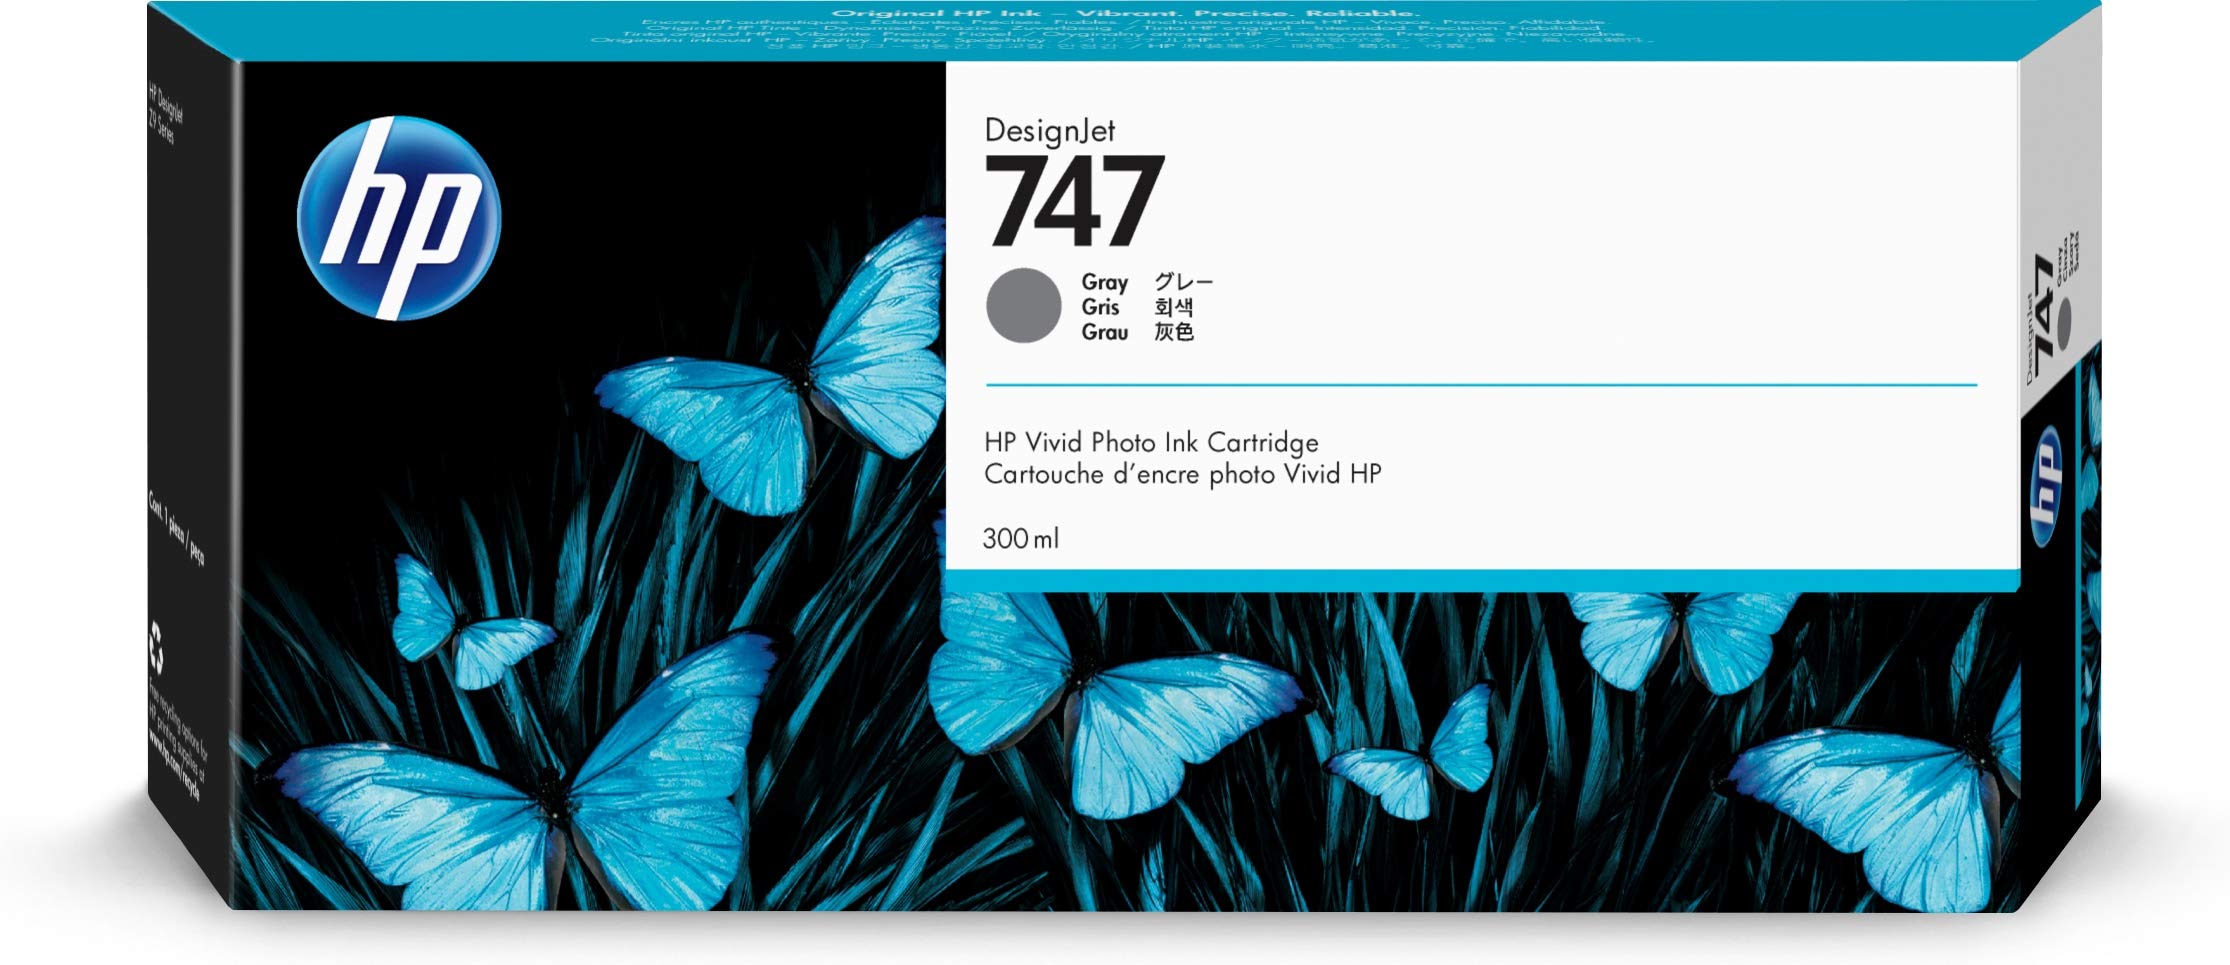 HP DesignJet Z9+ बड़े प्रारूप प्रिंटर के लिए 747 ग्रे 3...